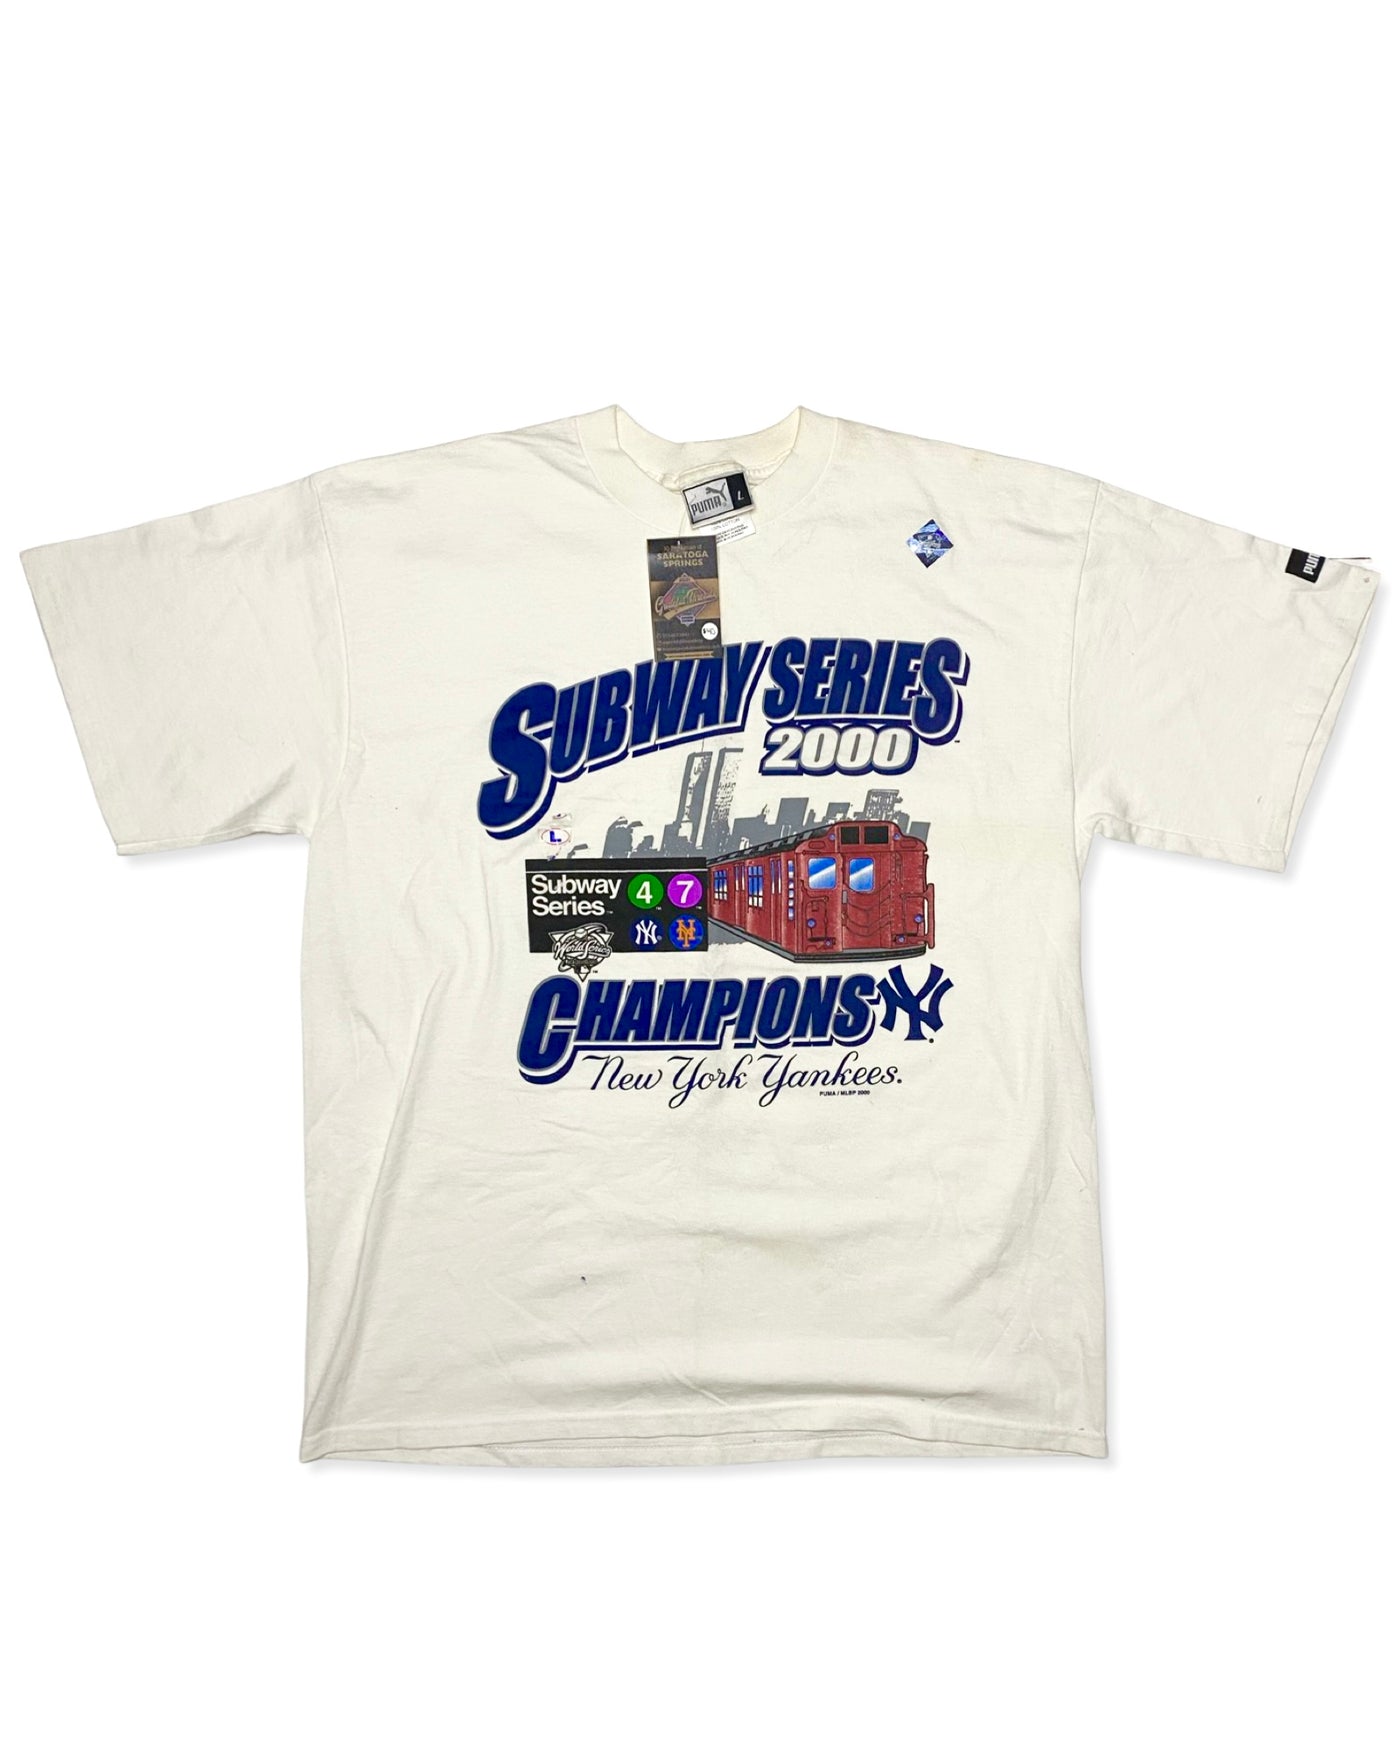 Vintage 2000 Yankees vs Mets Subway Series T-Shirt